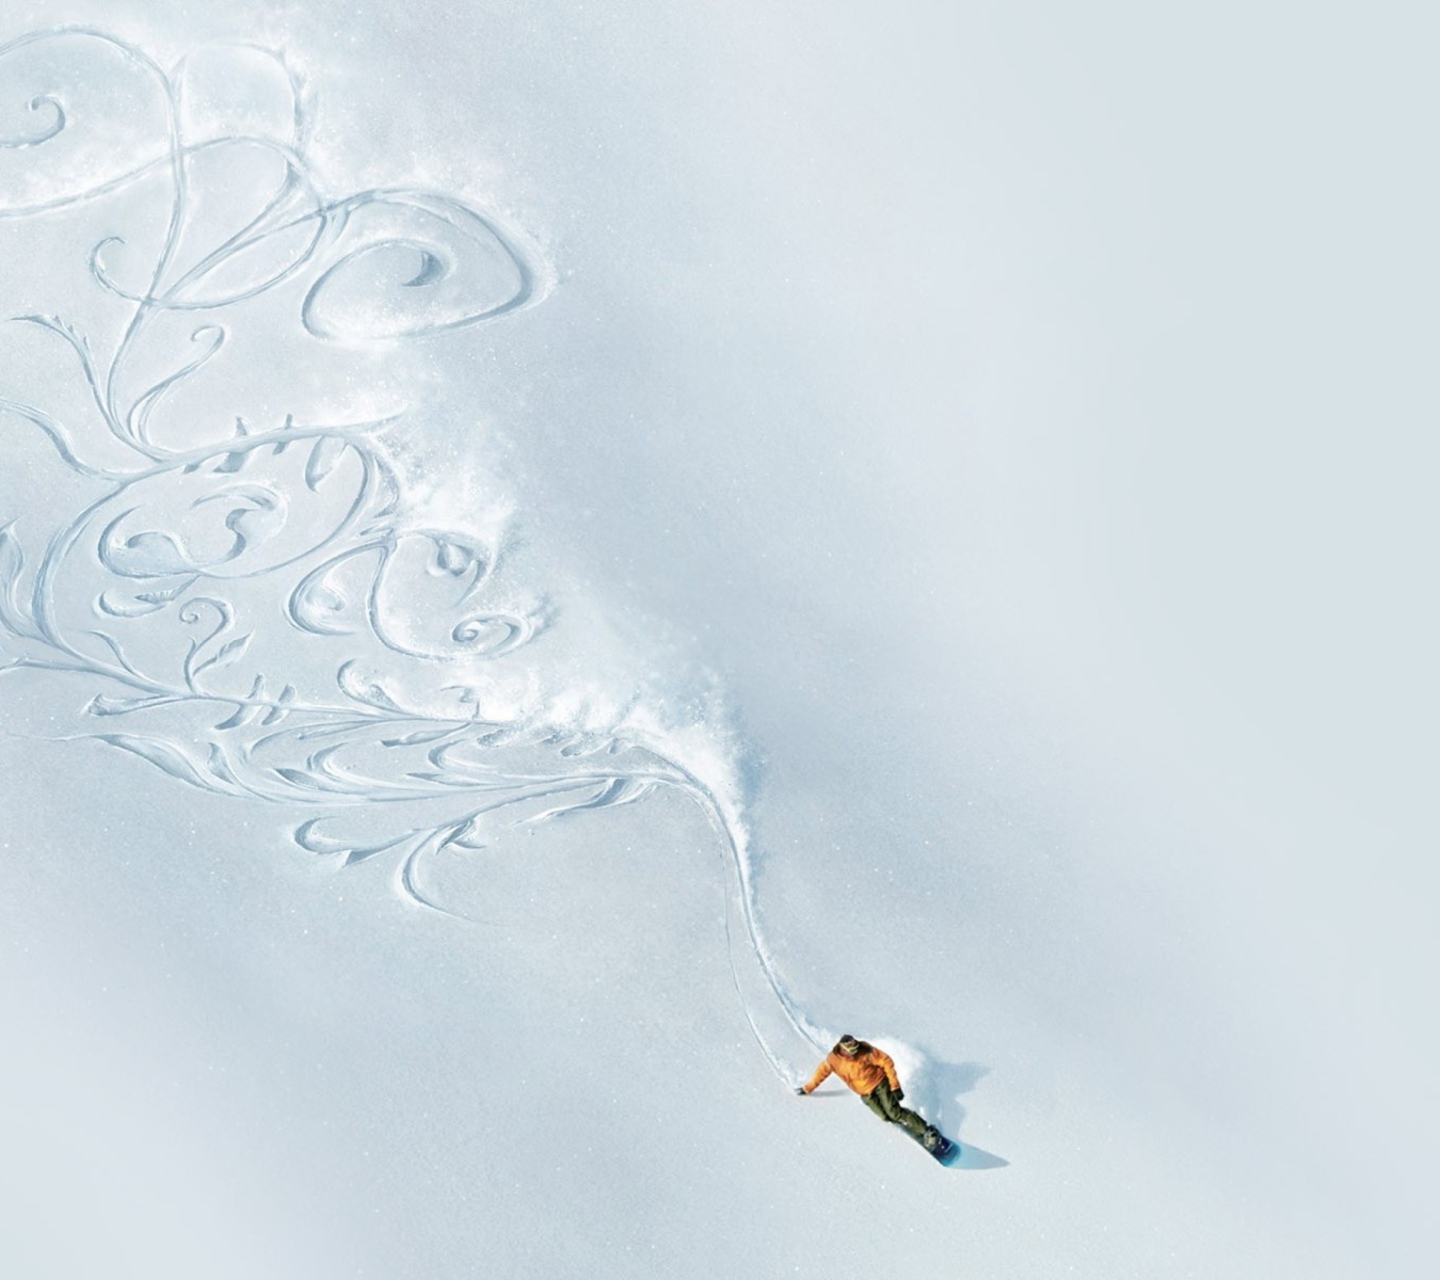 Snowboarding Art wallpaper 1440x1280